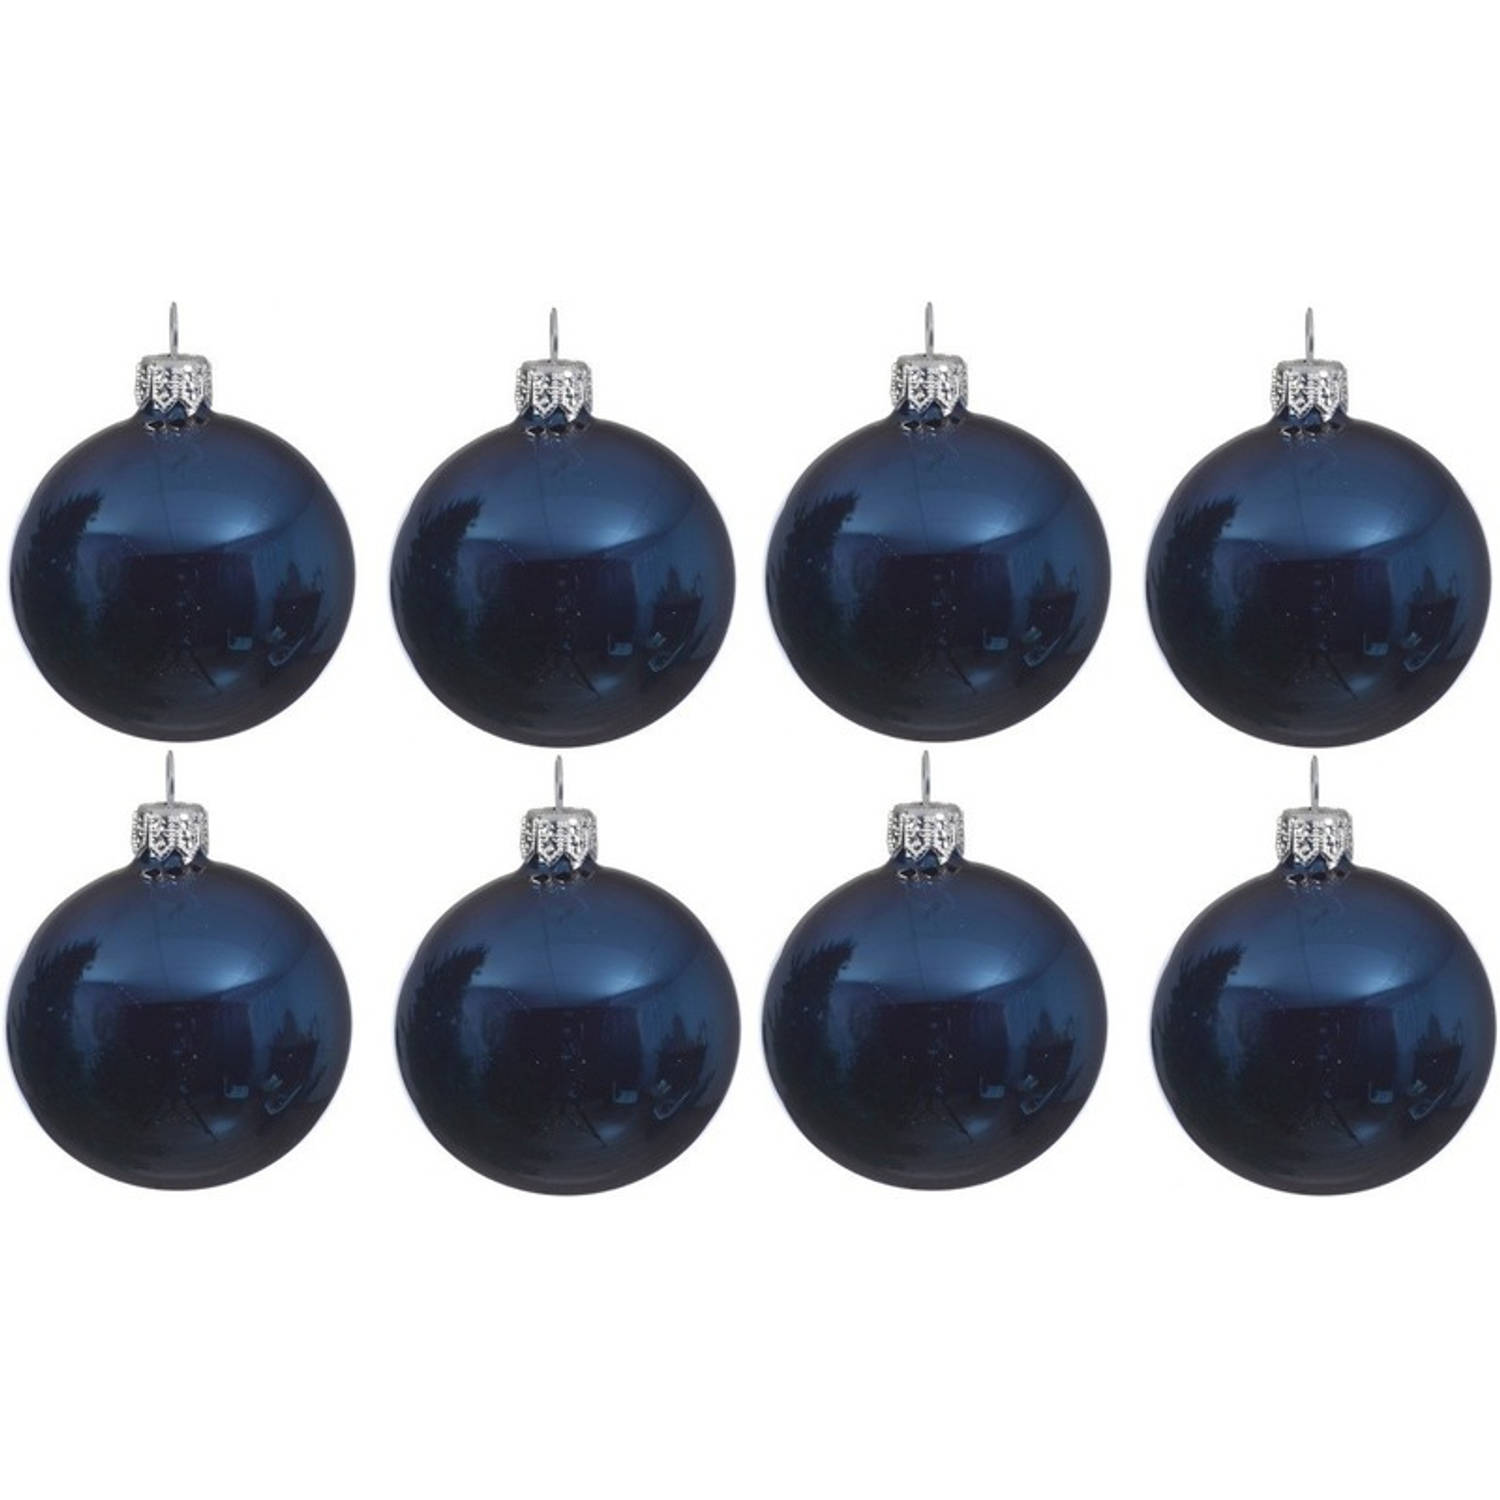 8x Donkerblauwe Glazen Kerstballen 10 Cm Glans-glanzende Kerstboomversiering Donkerblauw